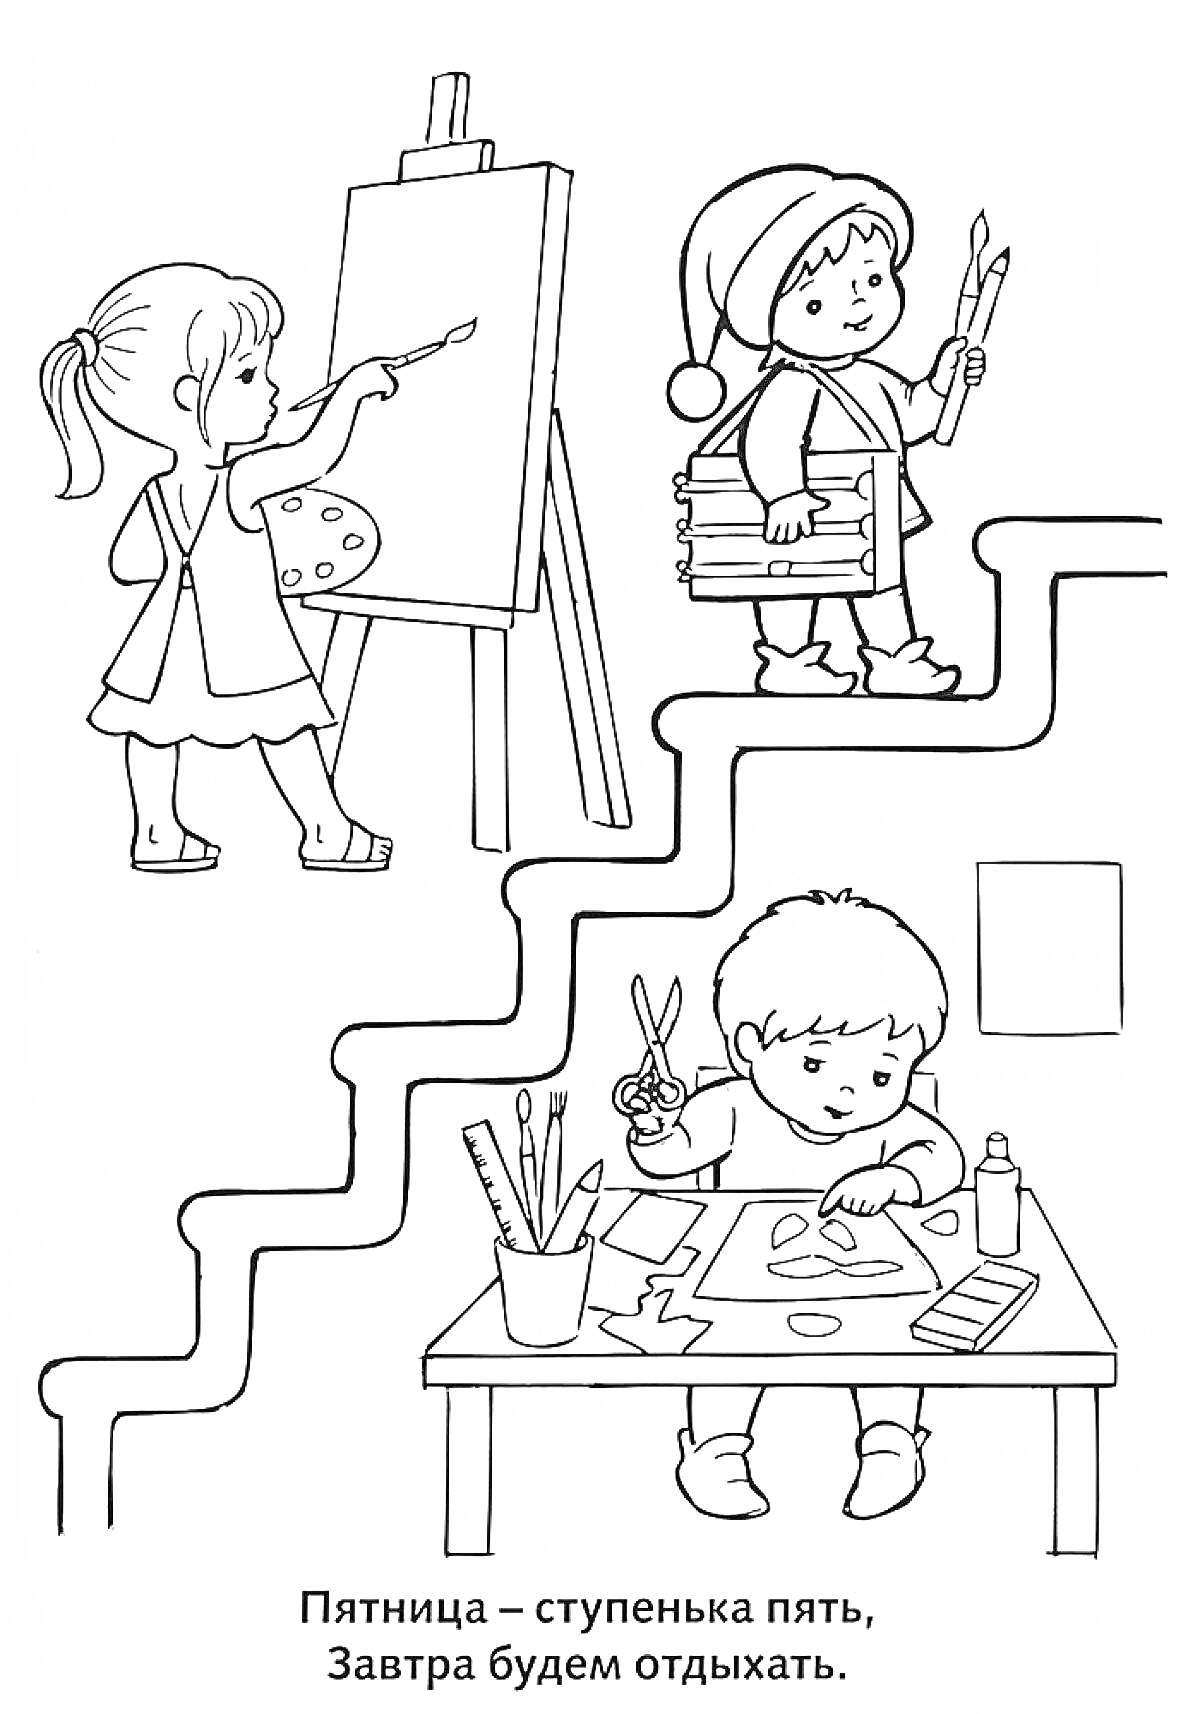 Дети на каждой ступени пятницы: рисование на мольберте, с книгами и кисточками, вырезание с ножницами